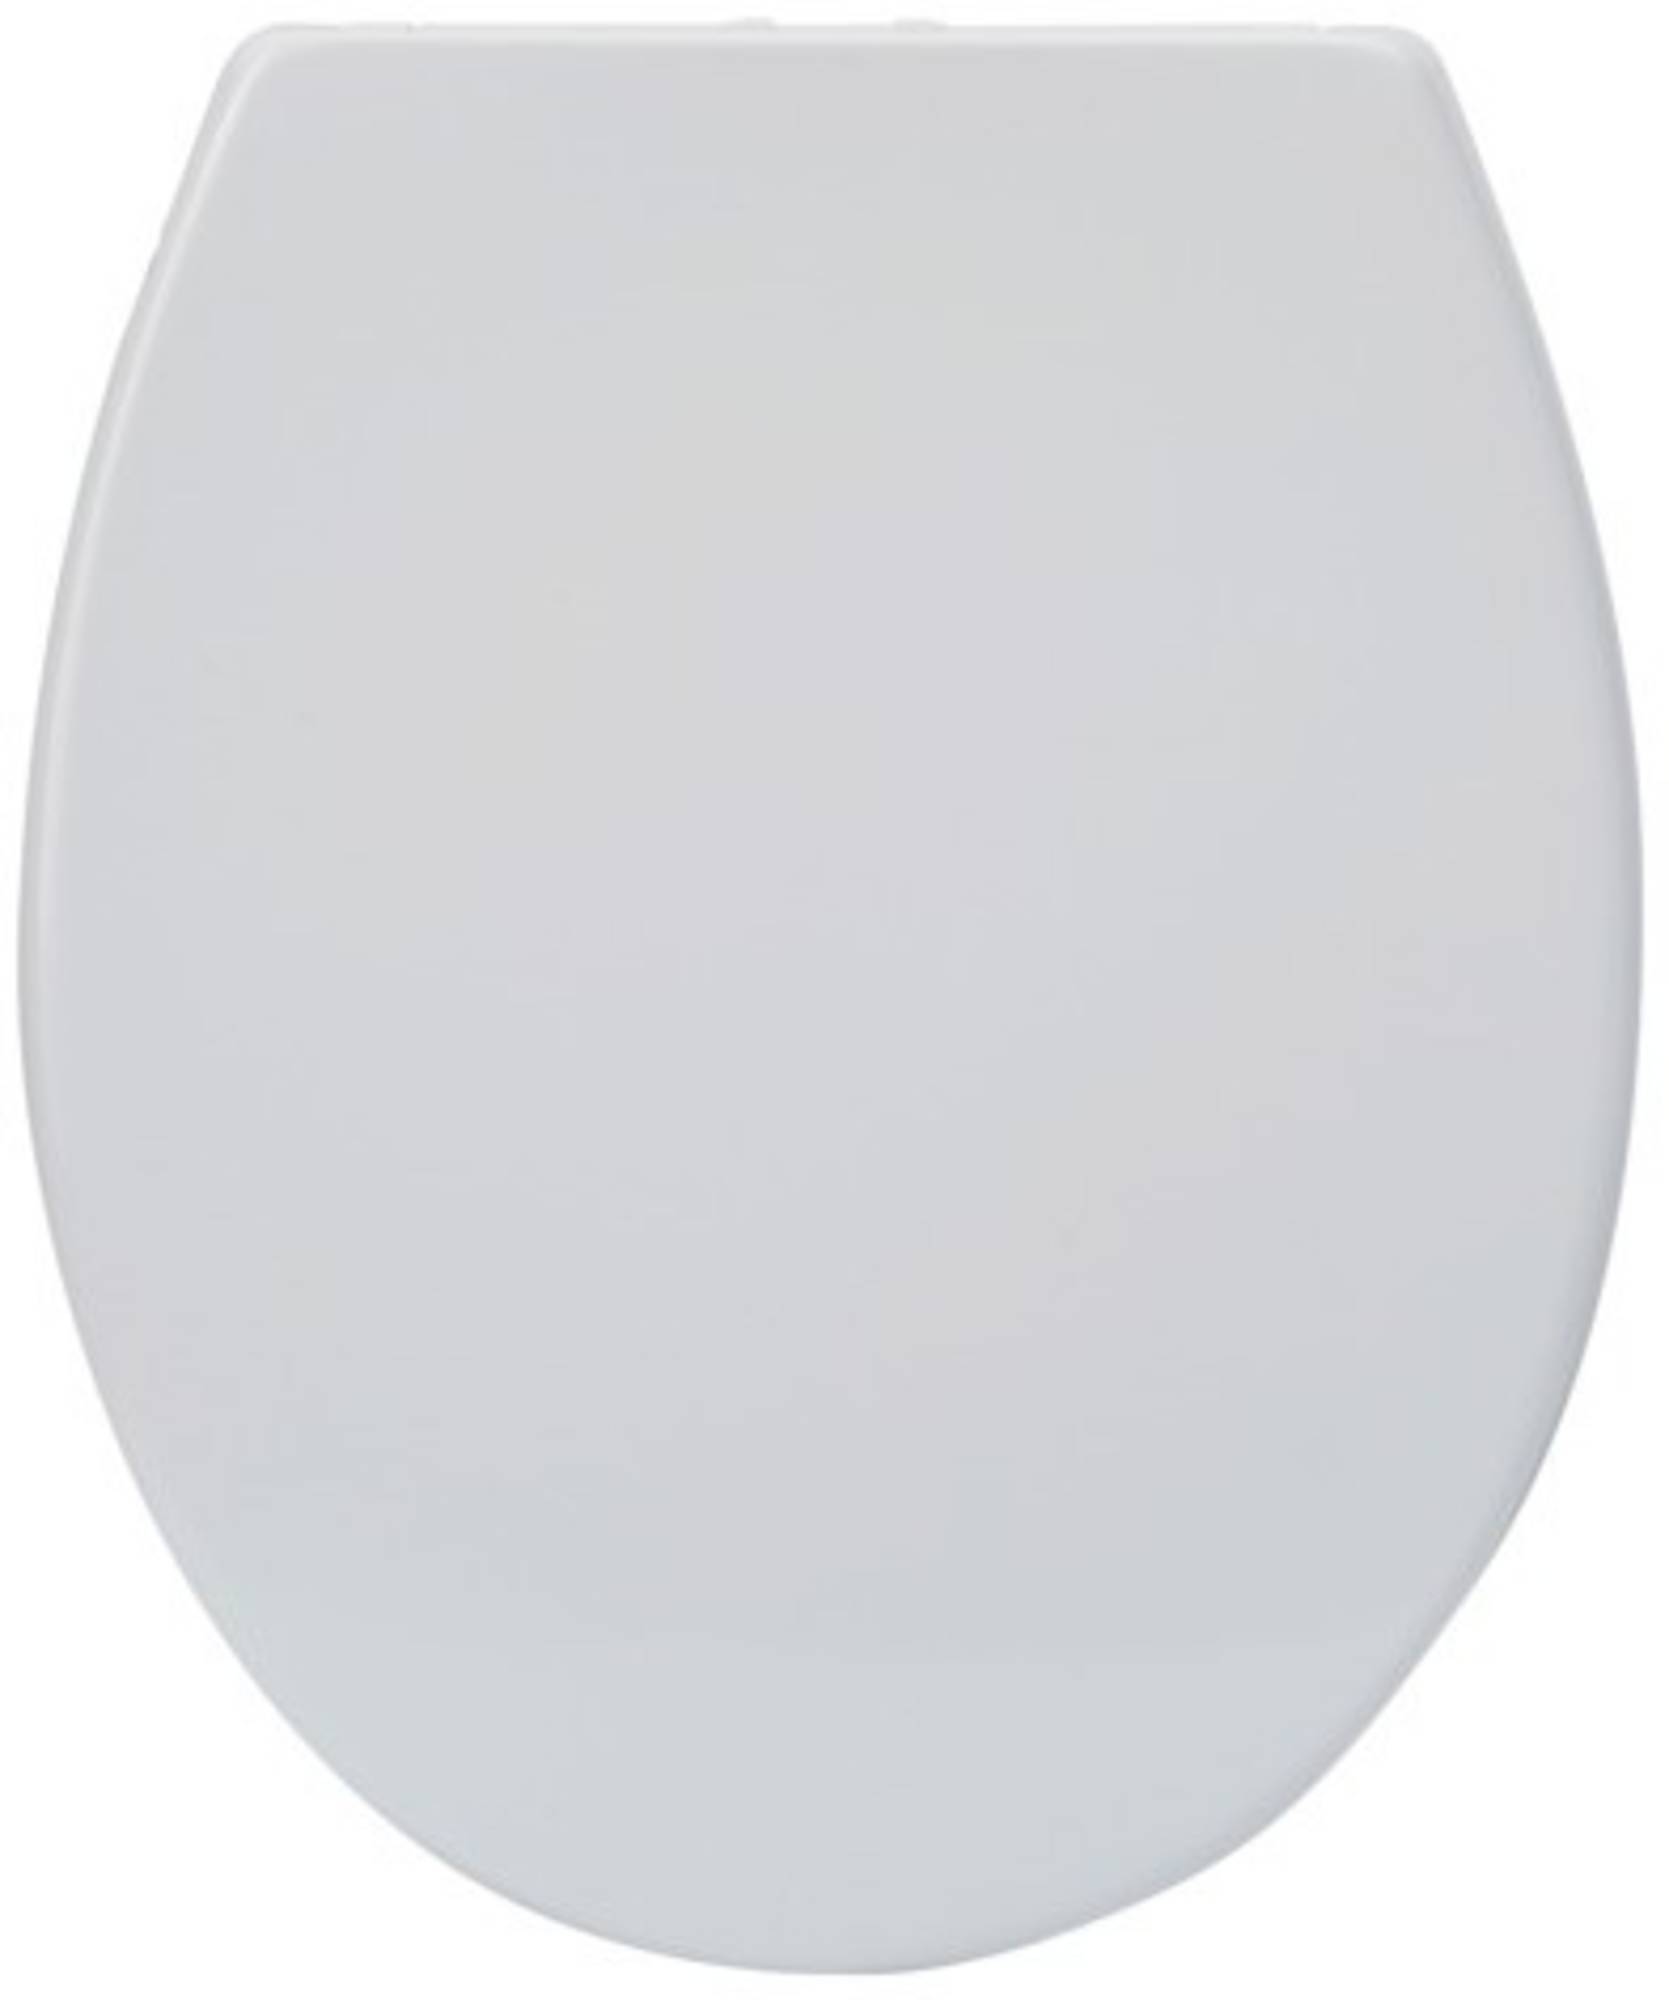 Saqu toiletbril met softclose & quick release 37,2x44,6x5,2cm Mat wit